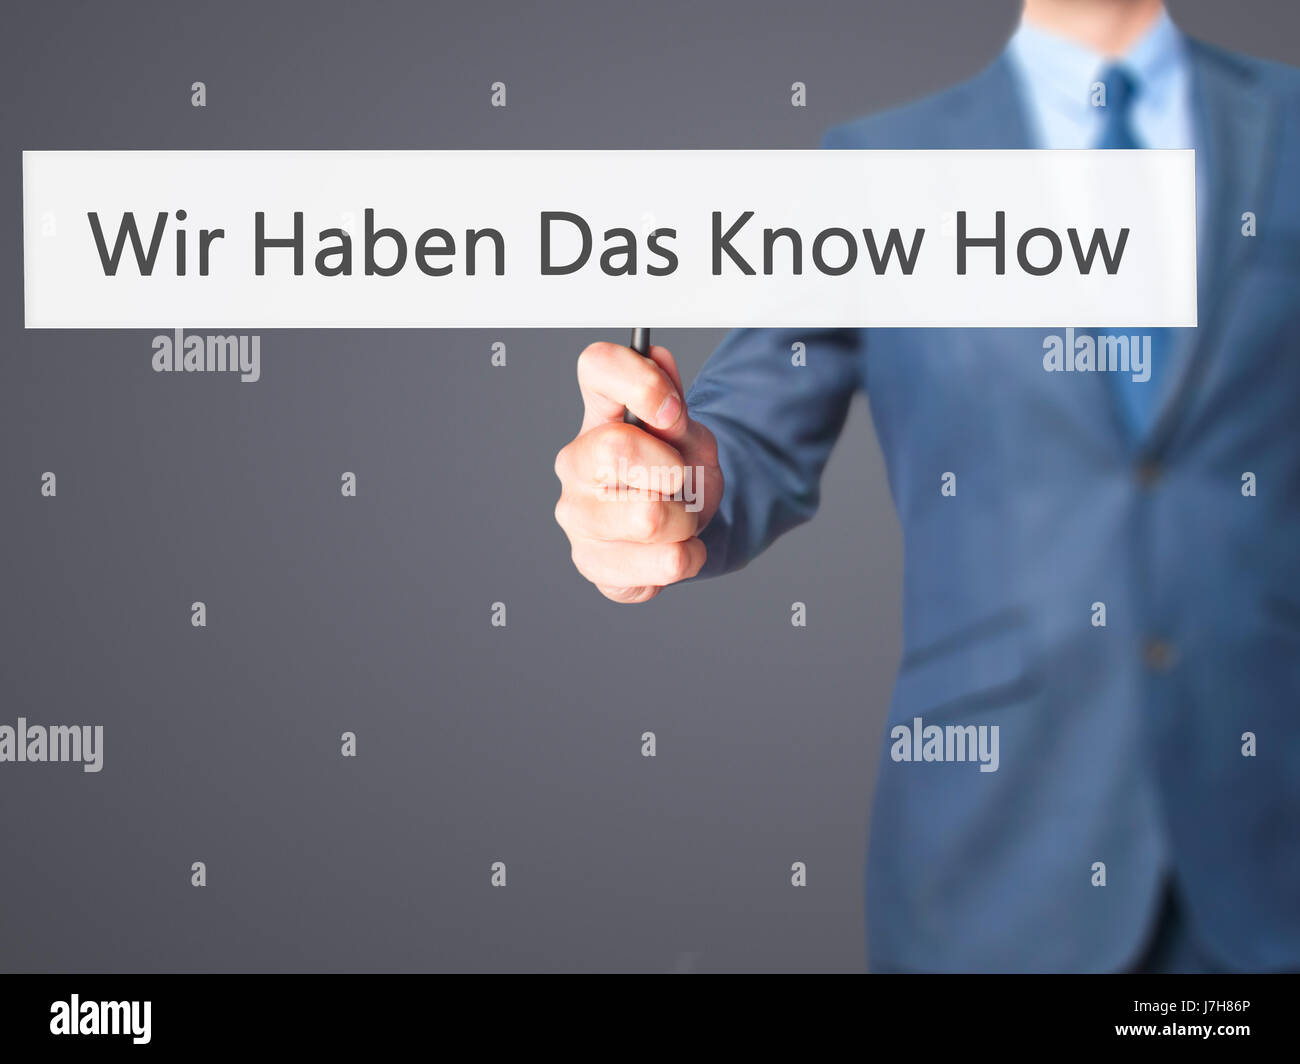 Wir haben Das Know How! (Abbiamo il know-how in tedesco) - Imprenditore mano azienda segno. Business, tecnologia internet concetto. Stock Photo Foto Stock